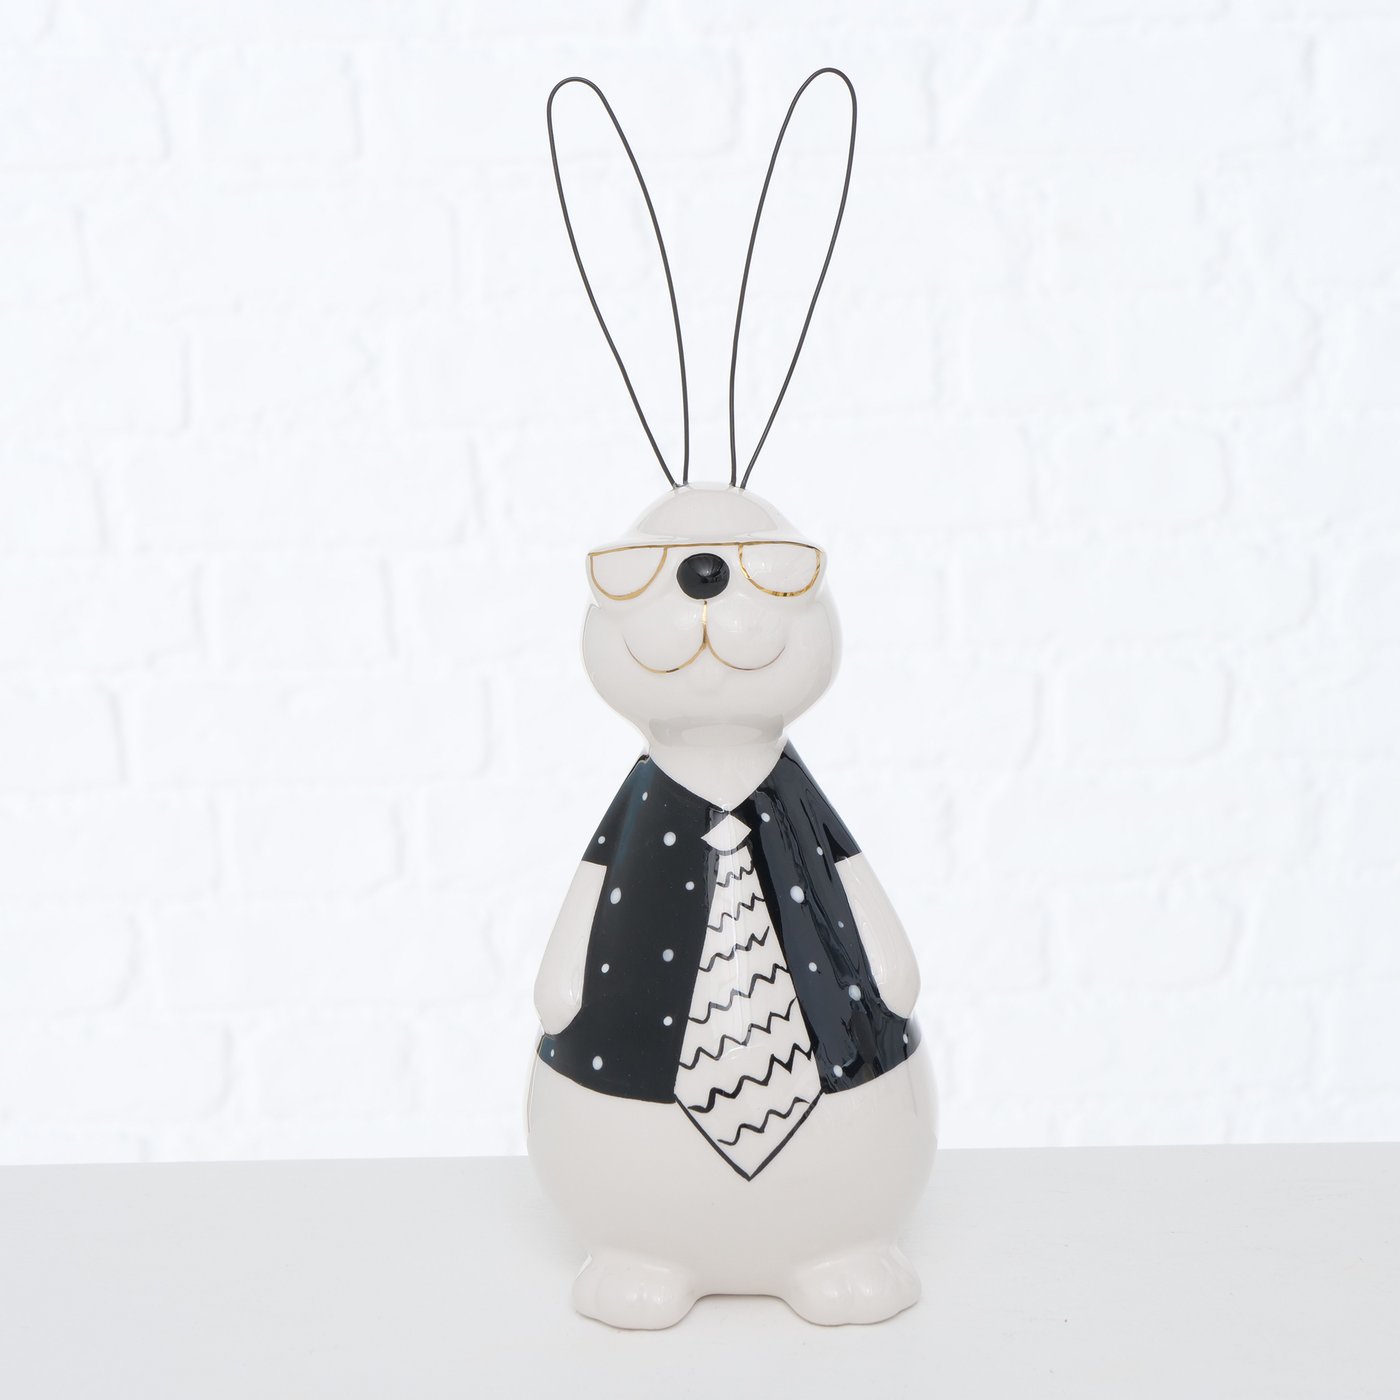 Deko Figur Hase Osterhase "Jano" schwarz weiß mit Krawatte - H30cm, 2018105, 4020607977914, Boltze Easter